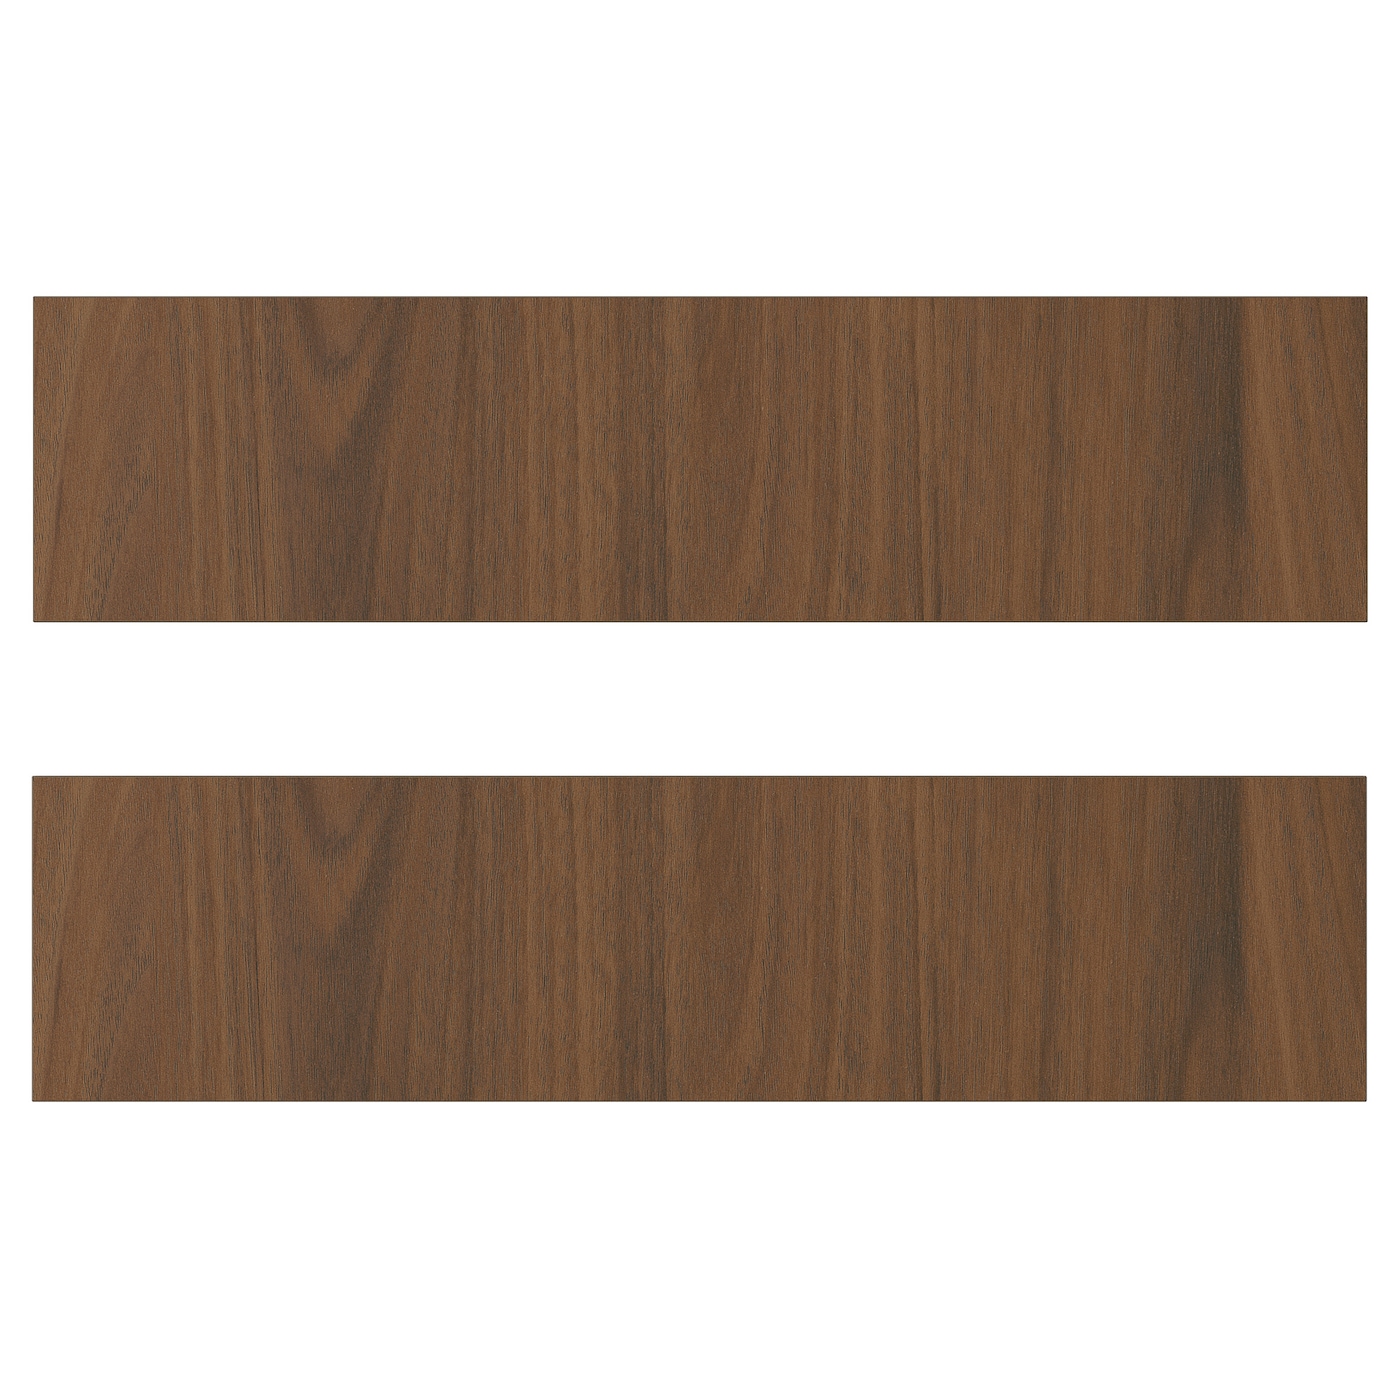 Дверца  - TISTORP IKEA/ ТИСТОРП ИКЕА,  40х10 см, коричневый